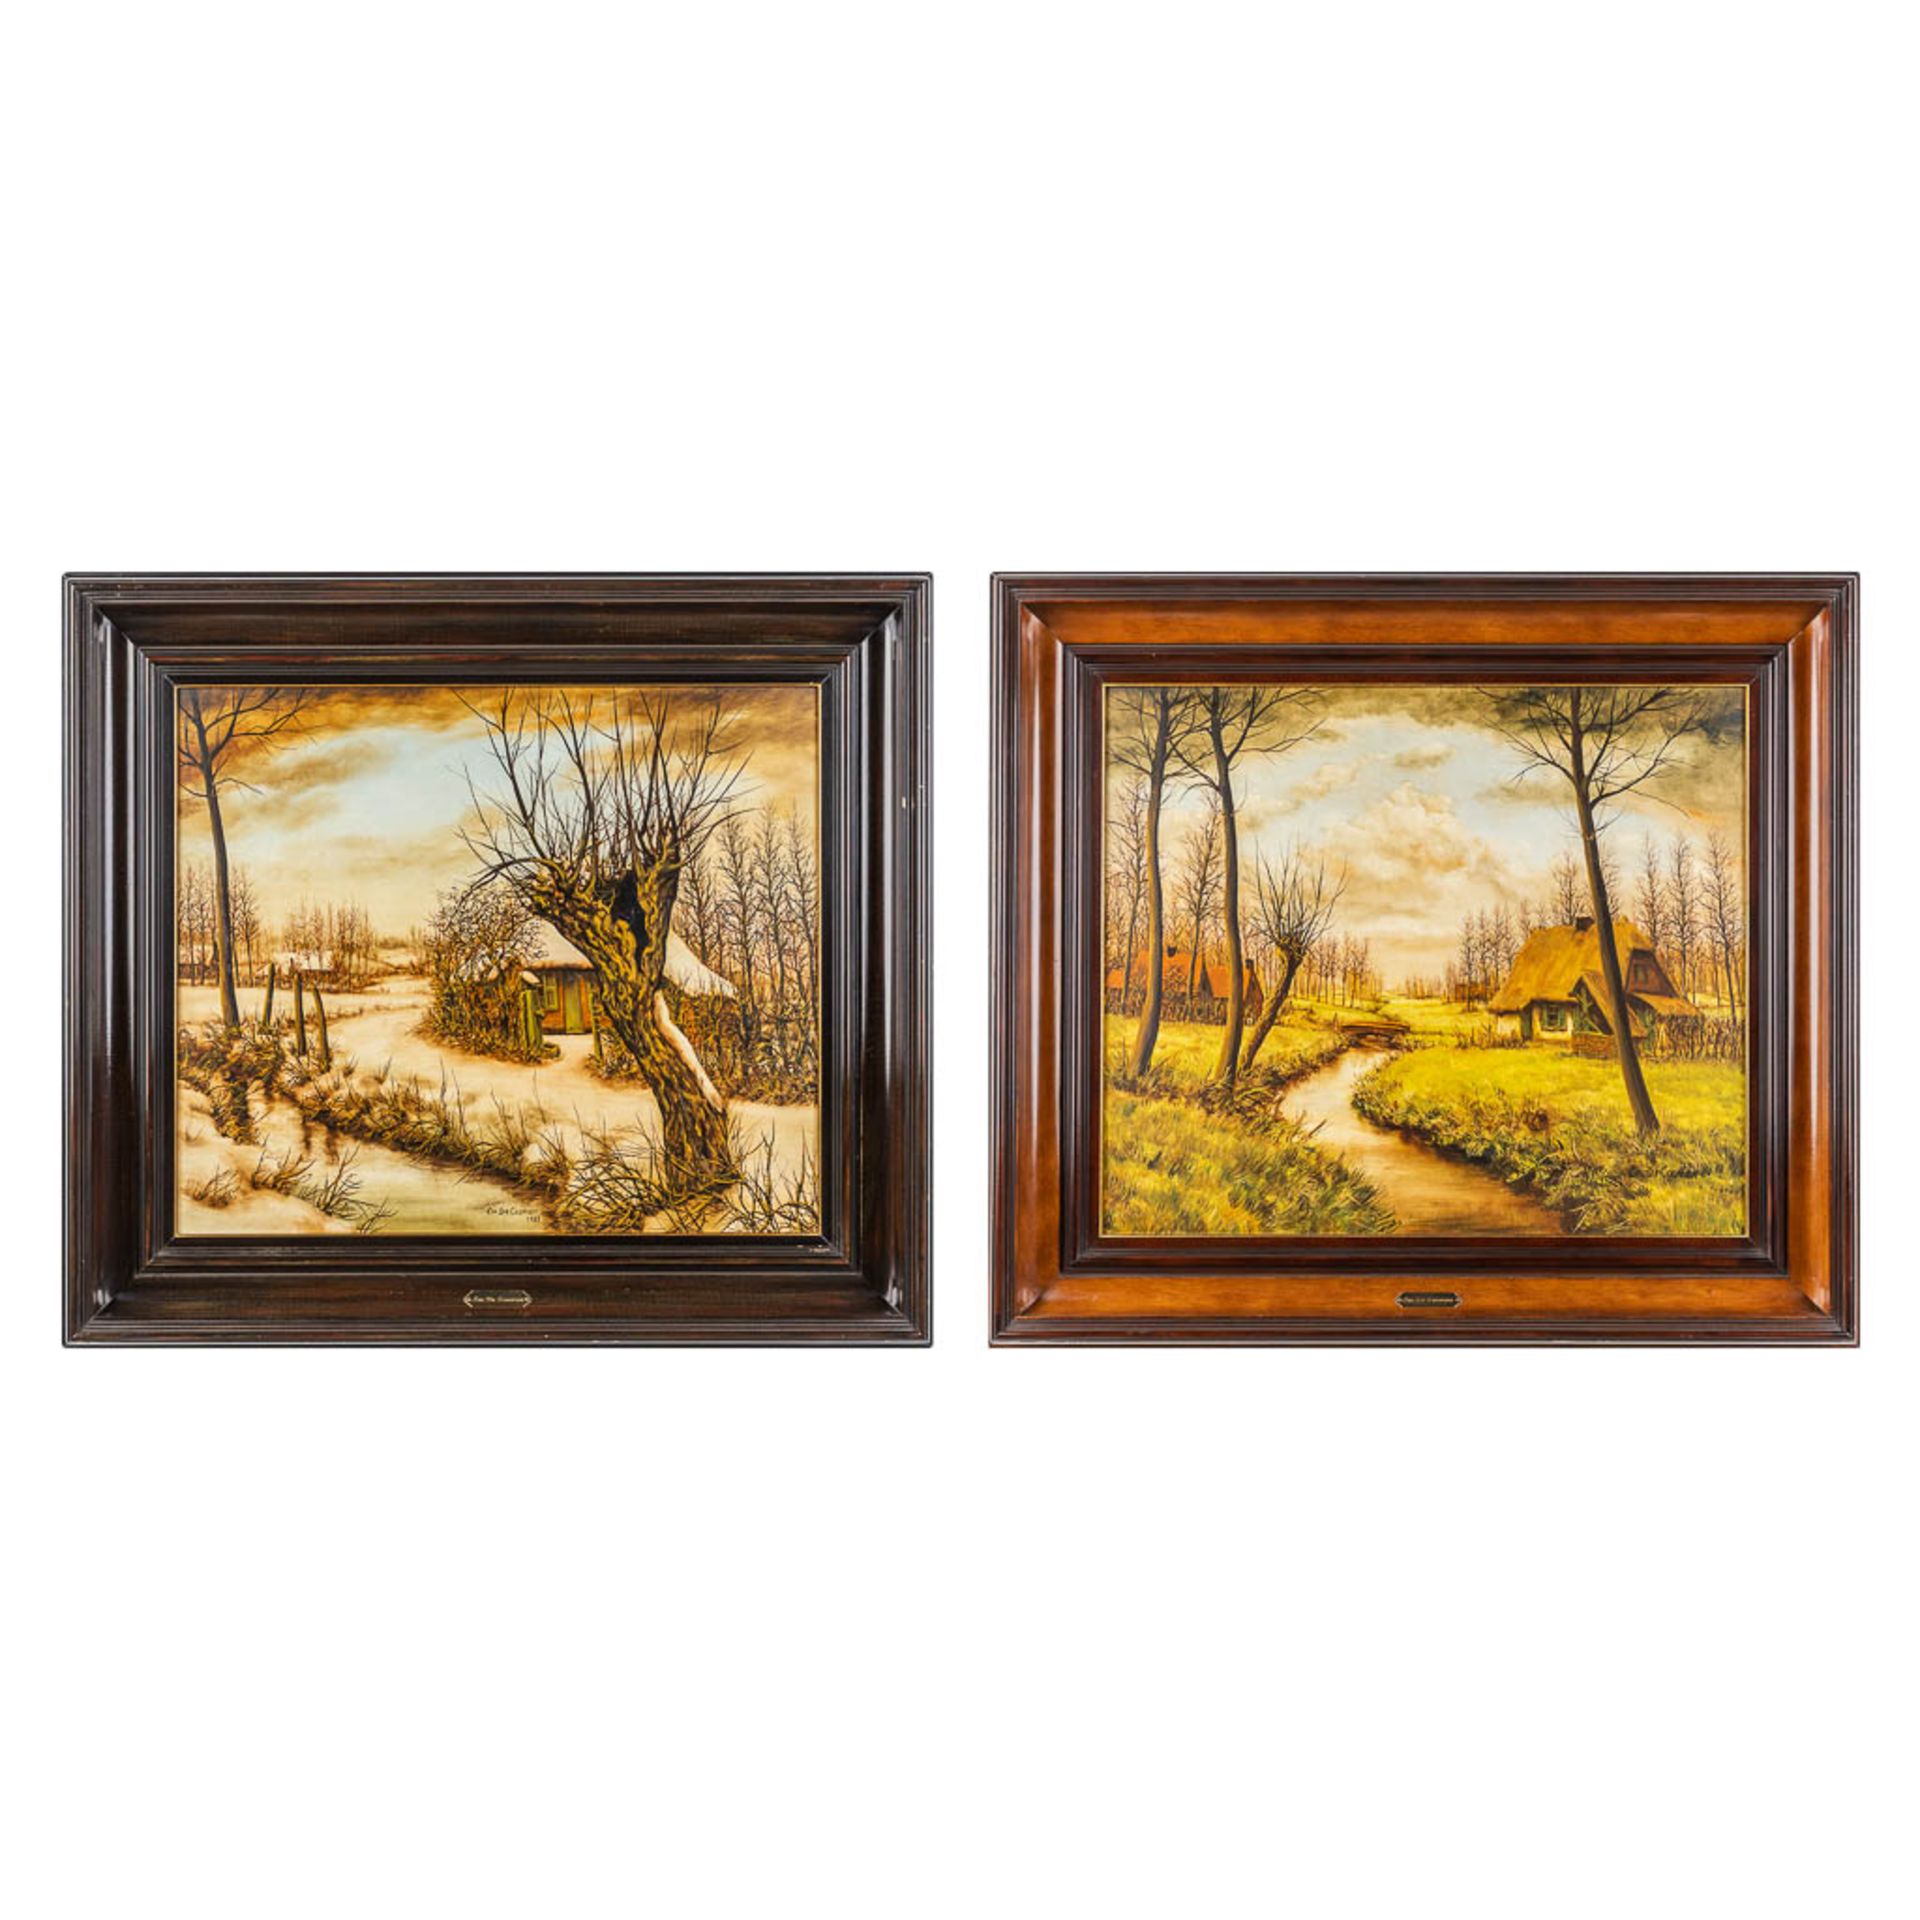 Emiel DE COOMAN (1922) 'Two Landscapes' oil on canvas. (W:70 x H:60 cm)